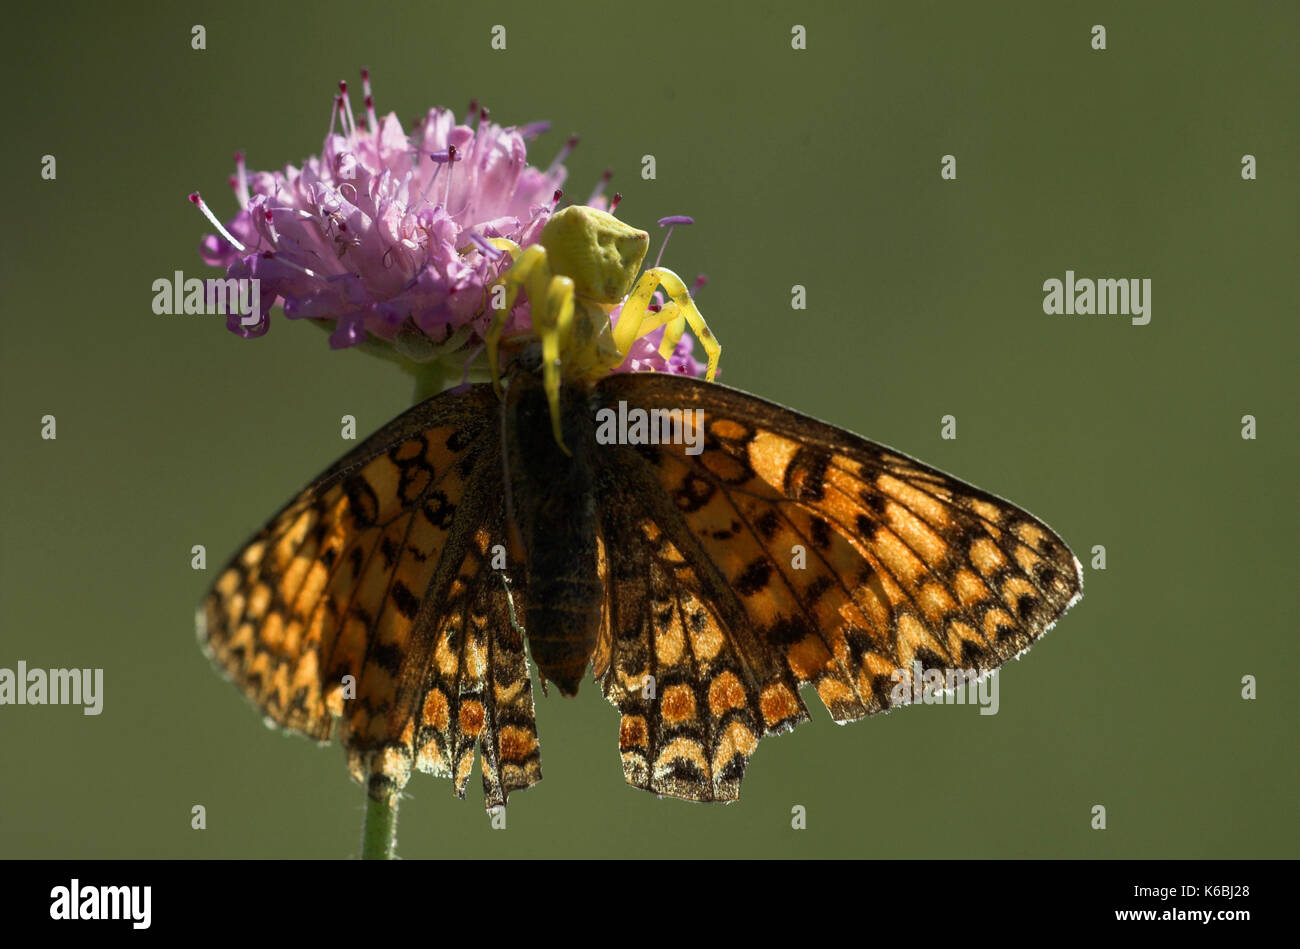 Heather ragno granchio, forma gialla, thomisus onustus con fritillary butterfly preda, alimentazione, sul fiore, Provenza Foto Stock